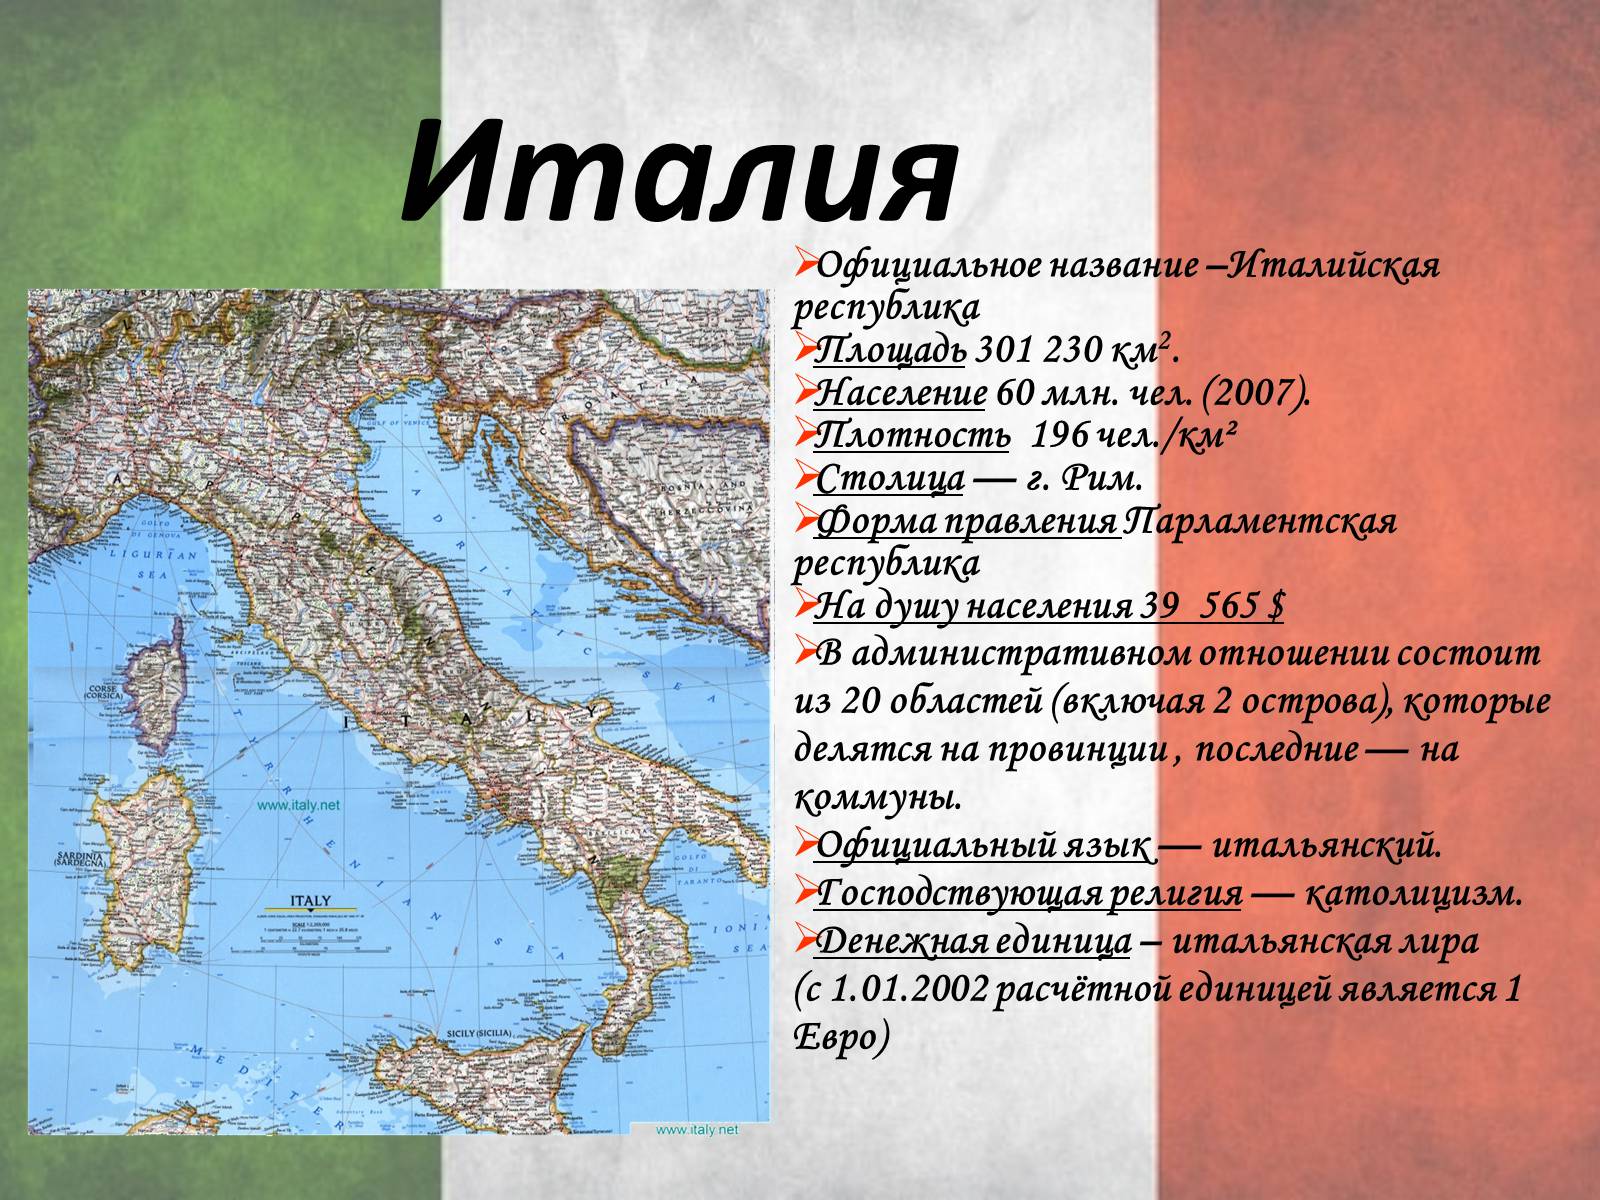 Италия название страны. Визитная карточка Италии кратко. Италия форма правления. Официальное название Италии. Визитка страны Италия.